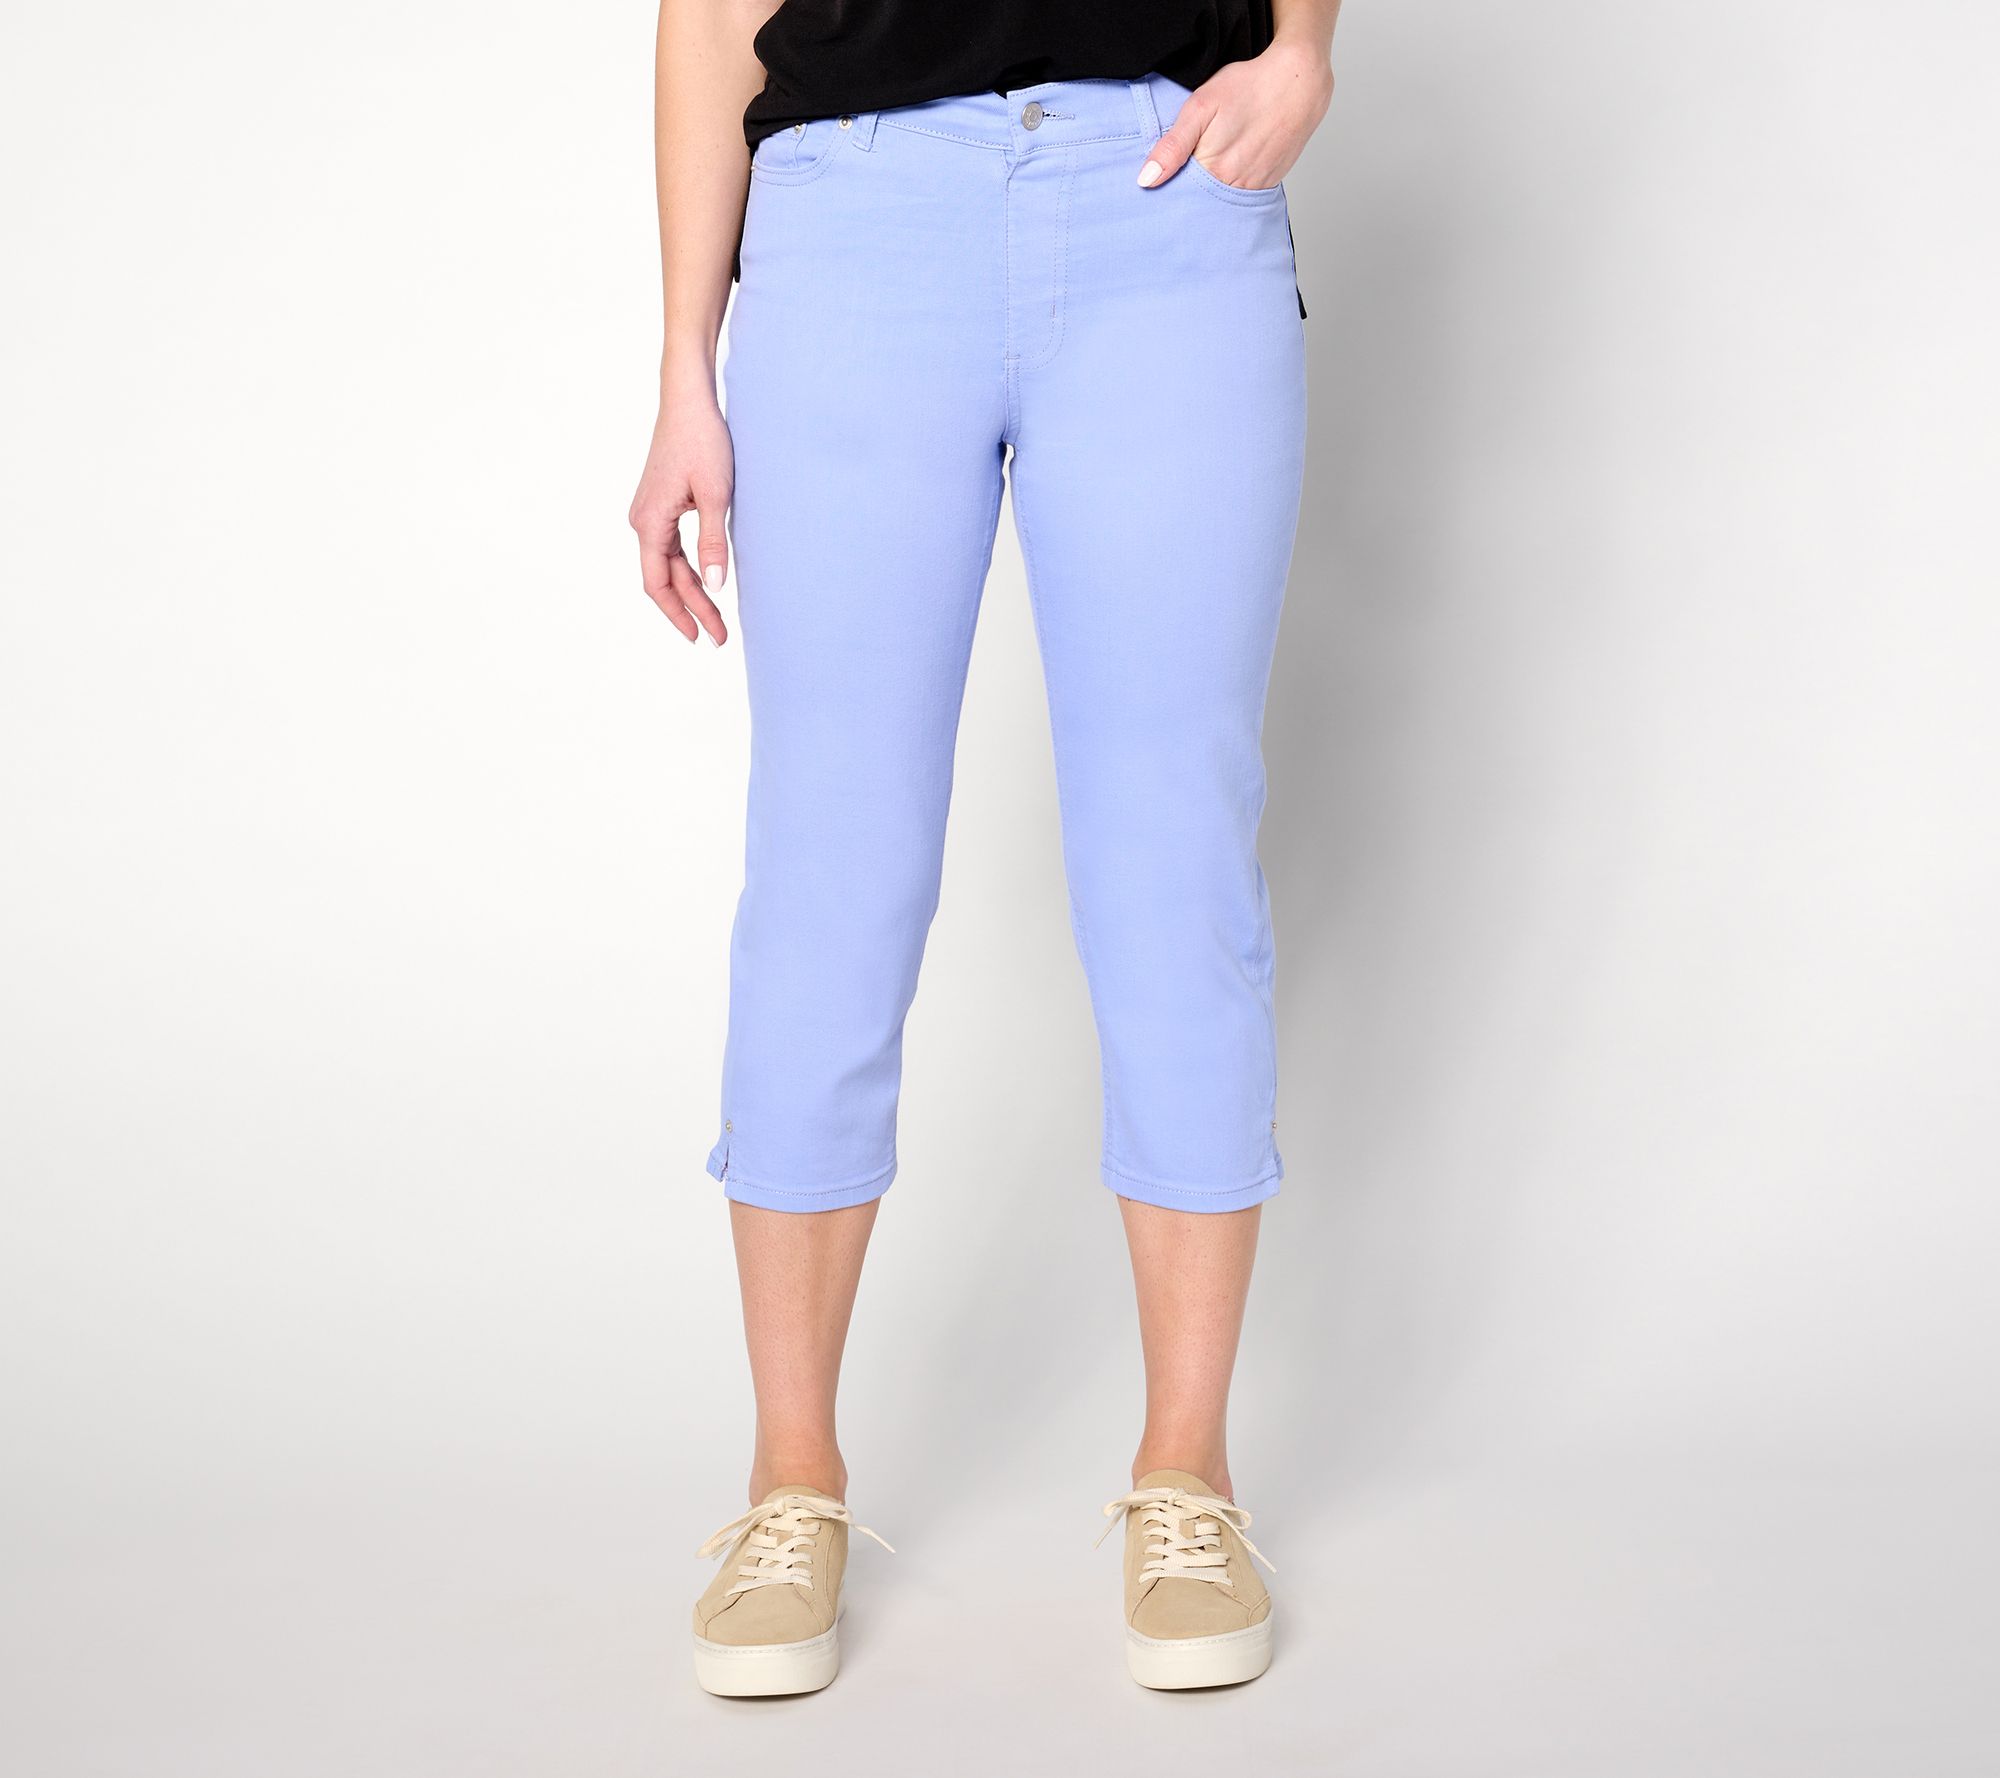 Denim & Co. Original Waist Stretch Capri Pants with Side Pockets